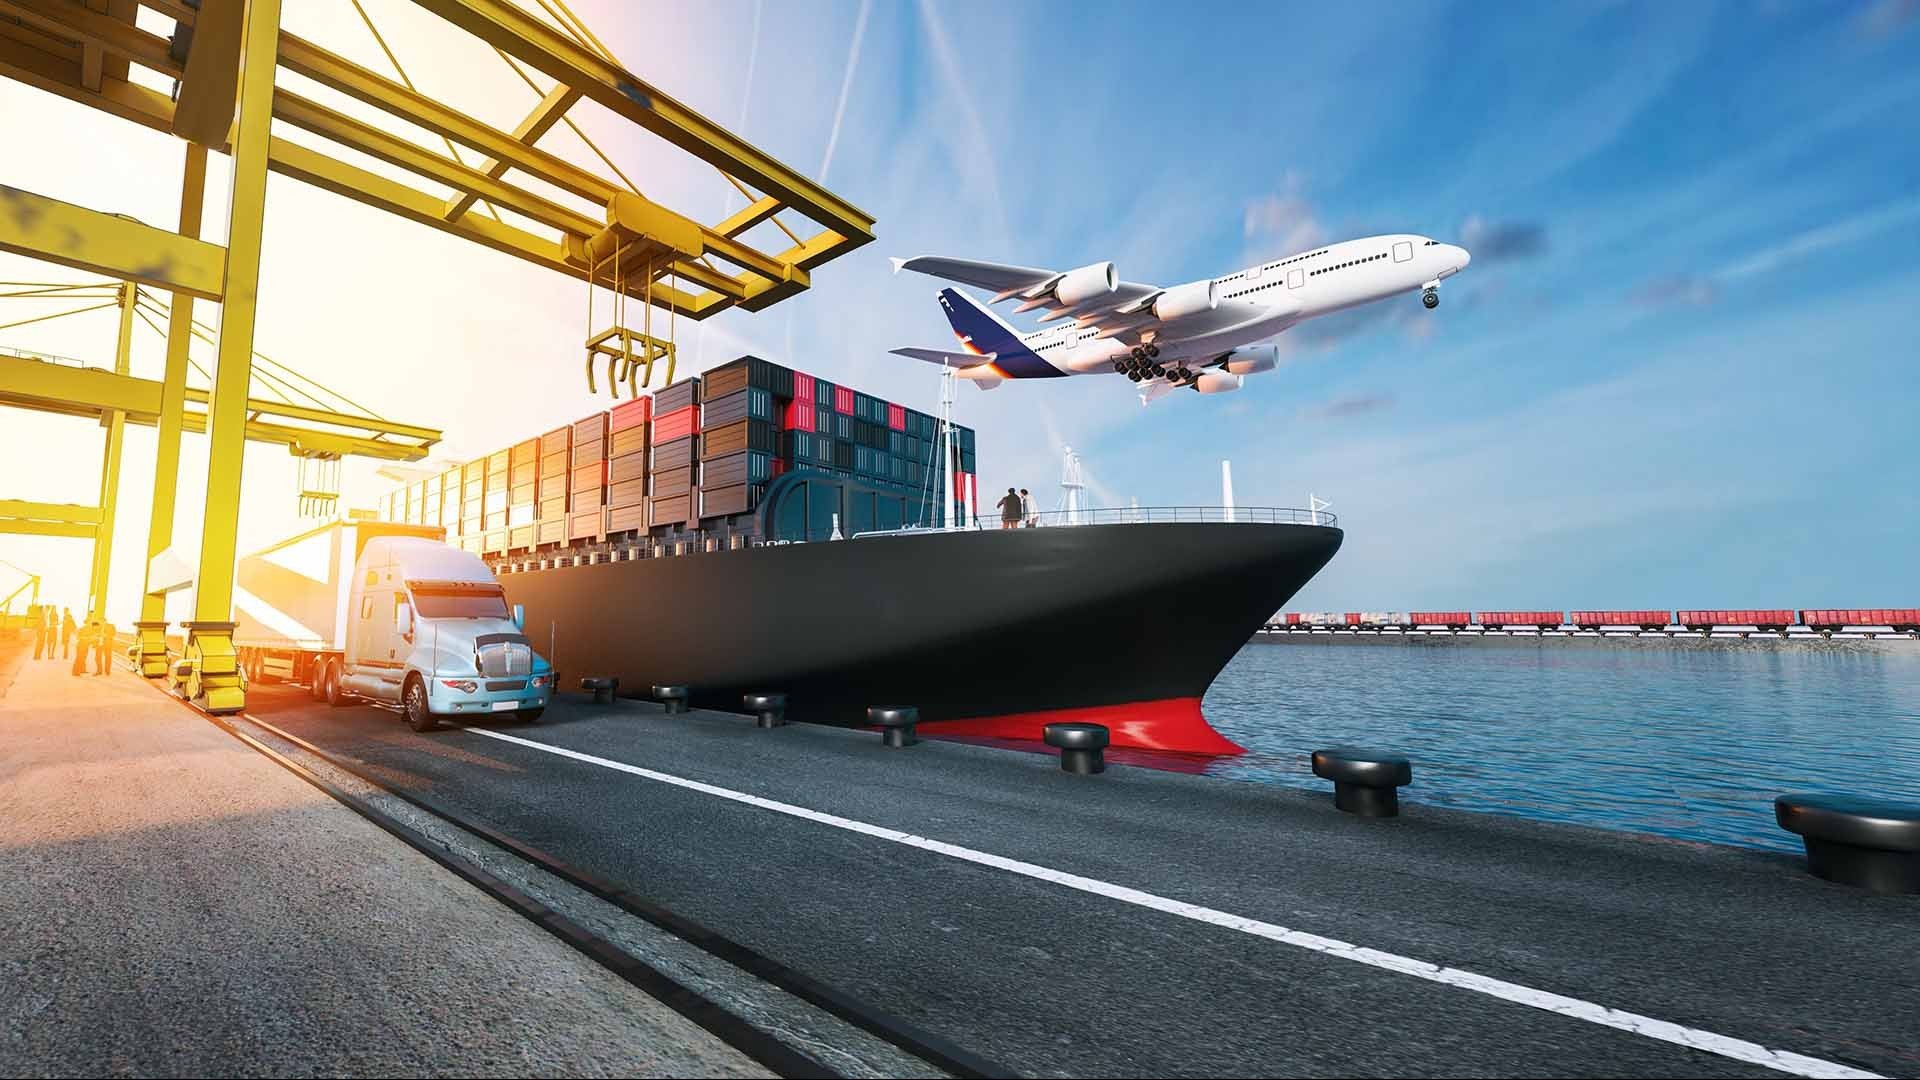 Logistics trong thời đại công nghệ 4.0 (Kỳ 1)